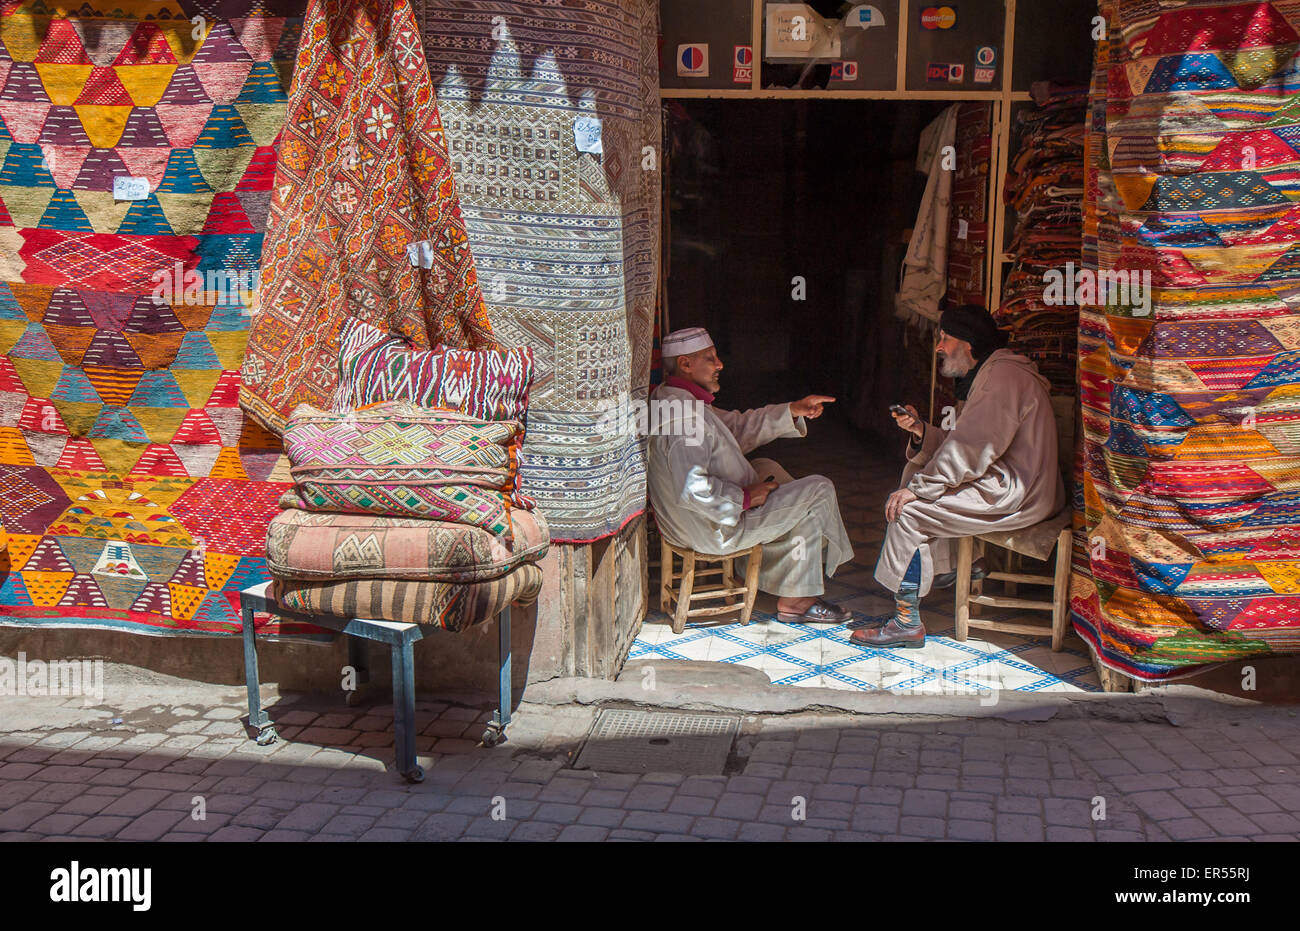 MARRAKESH, MOROCCO - April, 09, 2013: Carpet shop in Marrakesh, Morocco Stock Photo